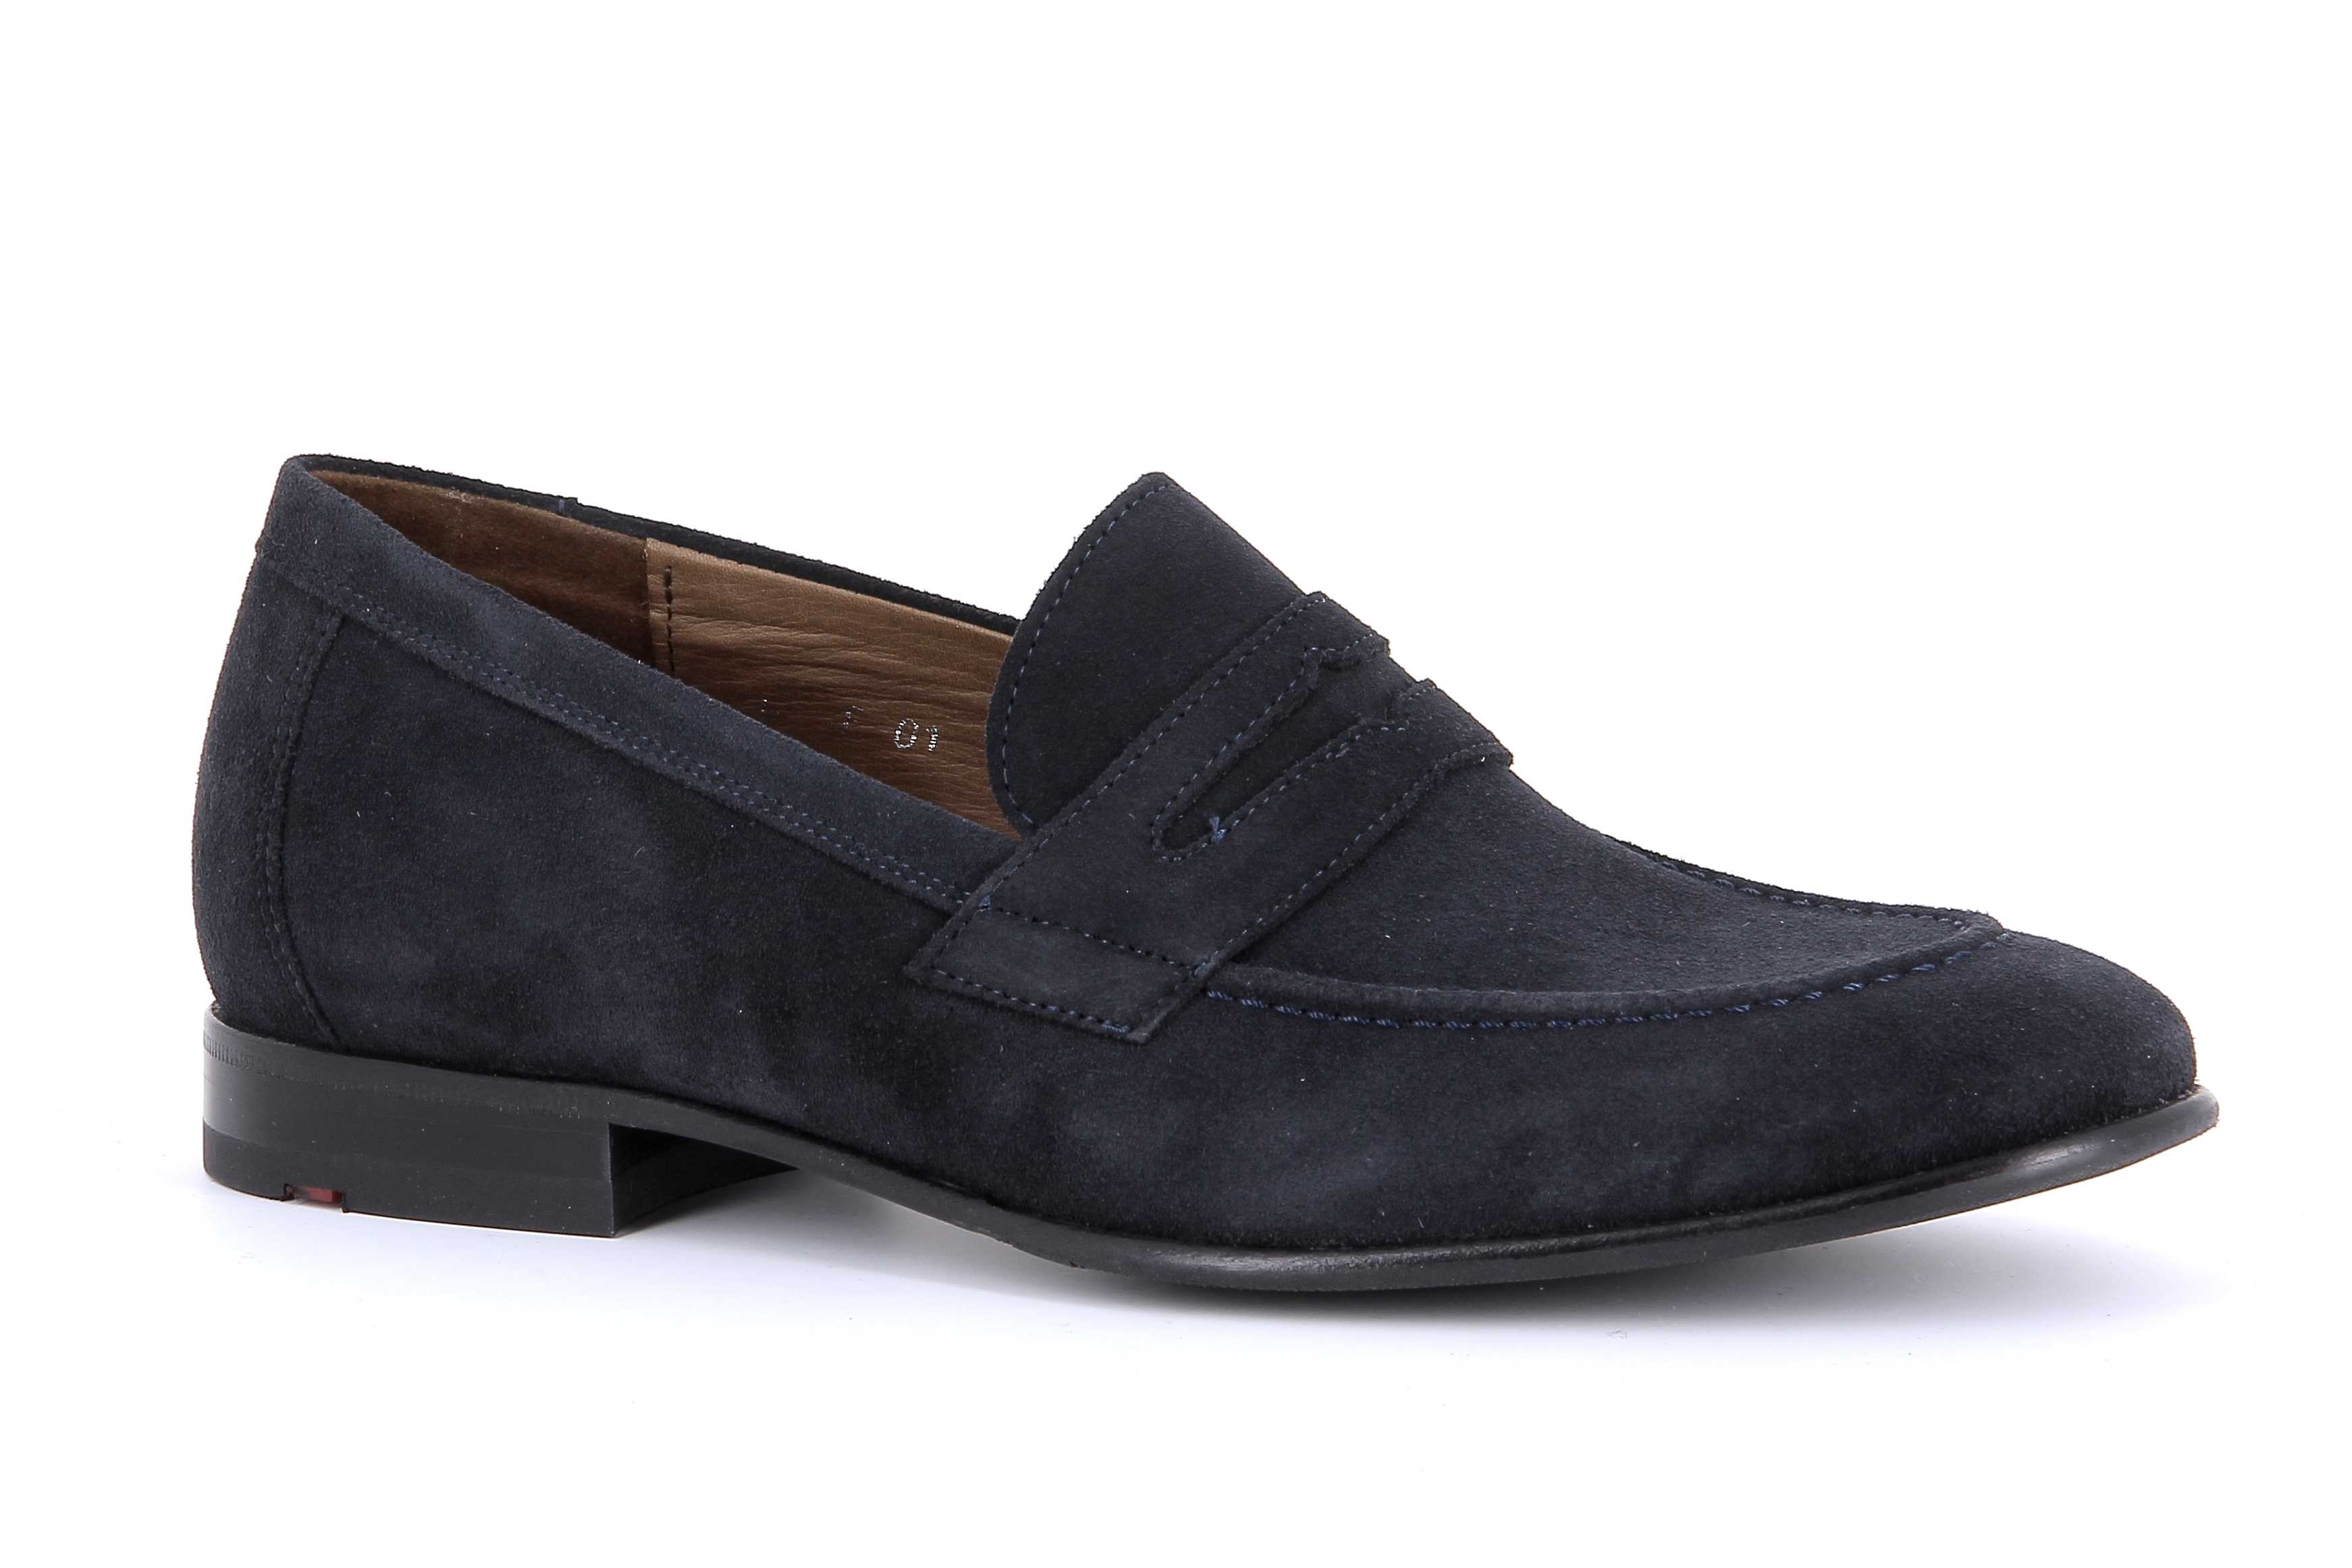 Mephisto-Shop chaussures d'exception - shoelaces - homme - modèle Paxton de marque Lloyd Chaussures confortables